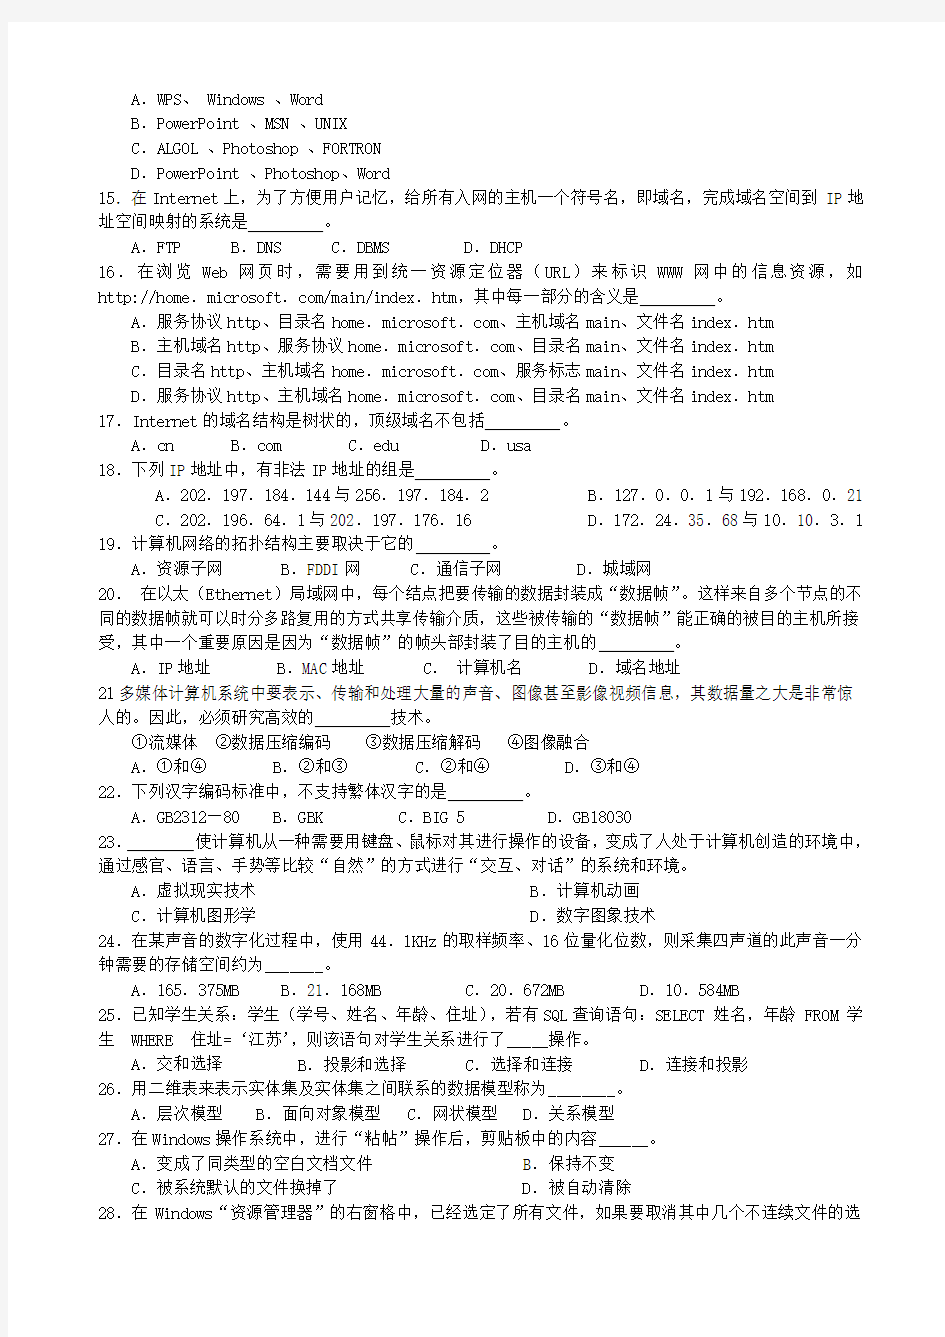 2007年江苏省专转本考试计算机真题(  附答案  )